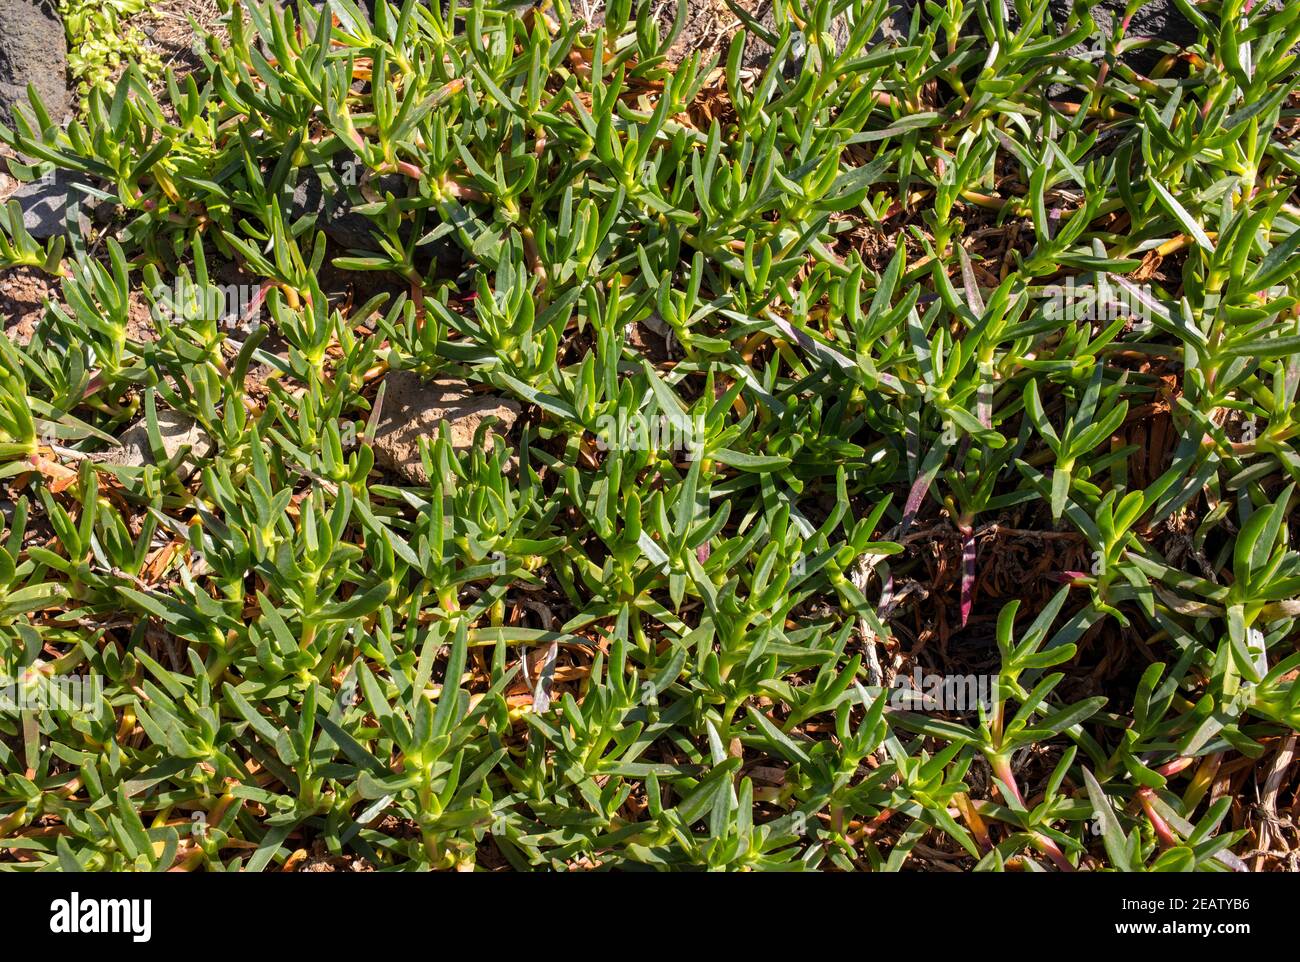 sedum plante succulente avec des feuilles vertes, épaisses et charnues dans le jardin Banque D'Images